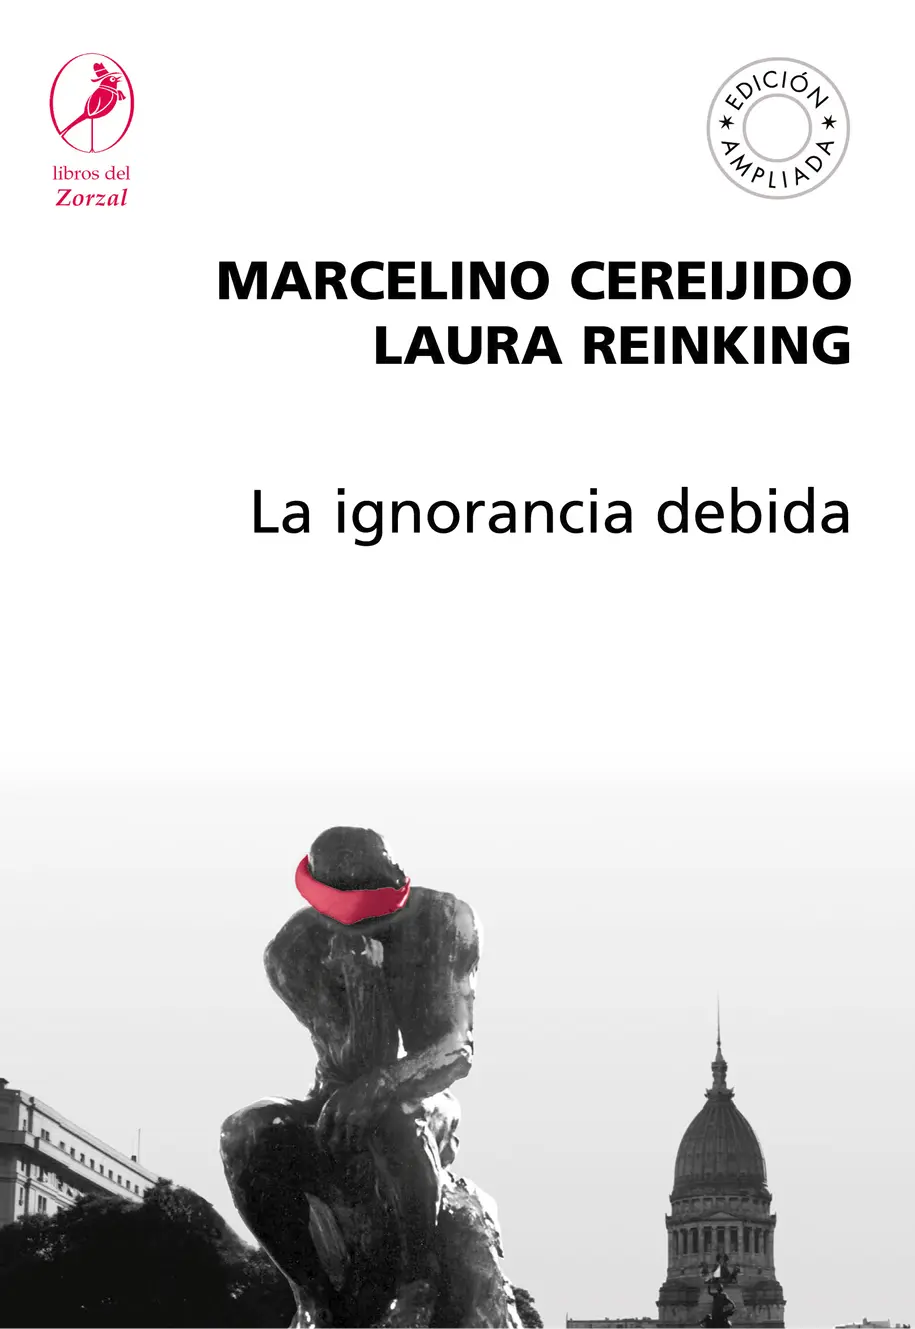 Marcelino Cereijido Laura Reinking La ignorancia debida Cereijido - фото 1